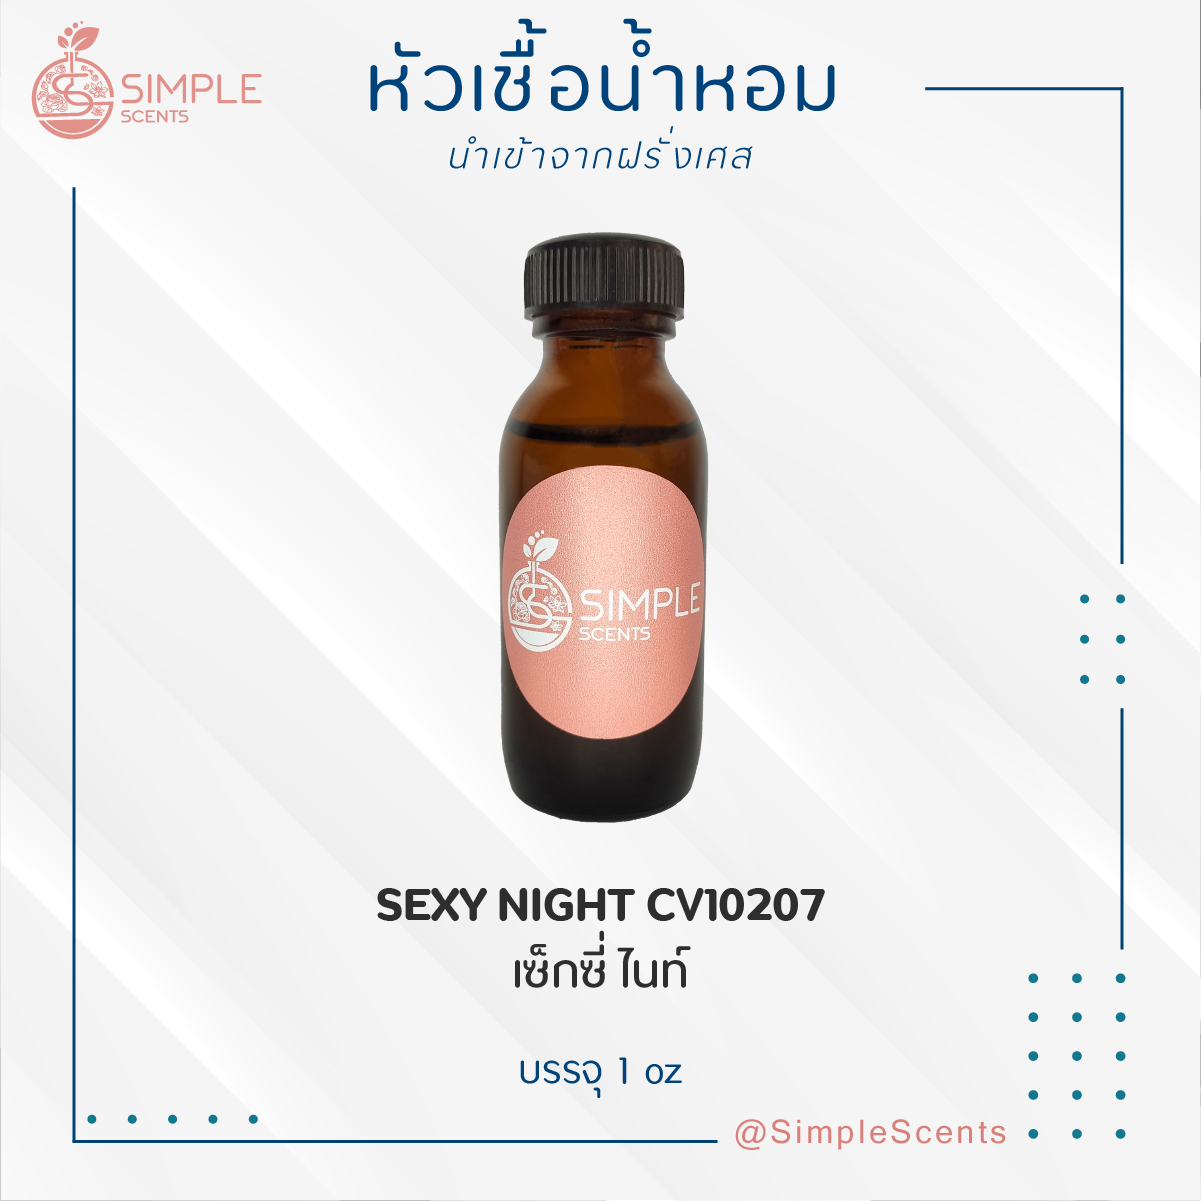 SEXY NIGHT CV10207 / เซ็กซี่ ไนท์